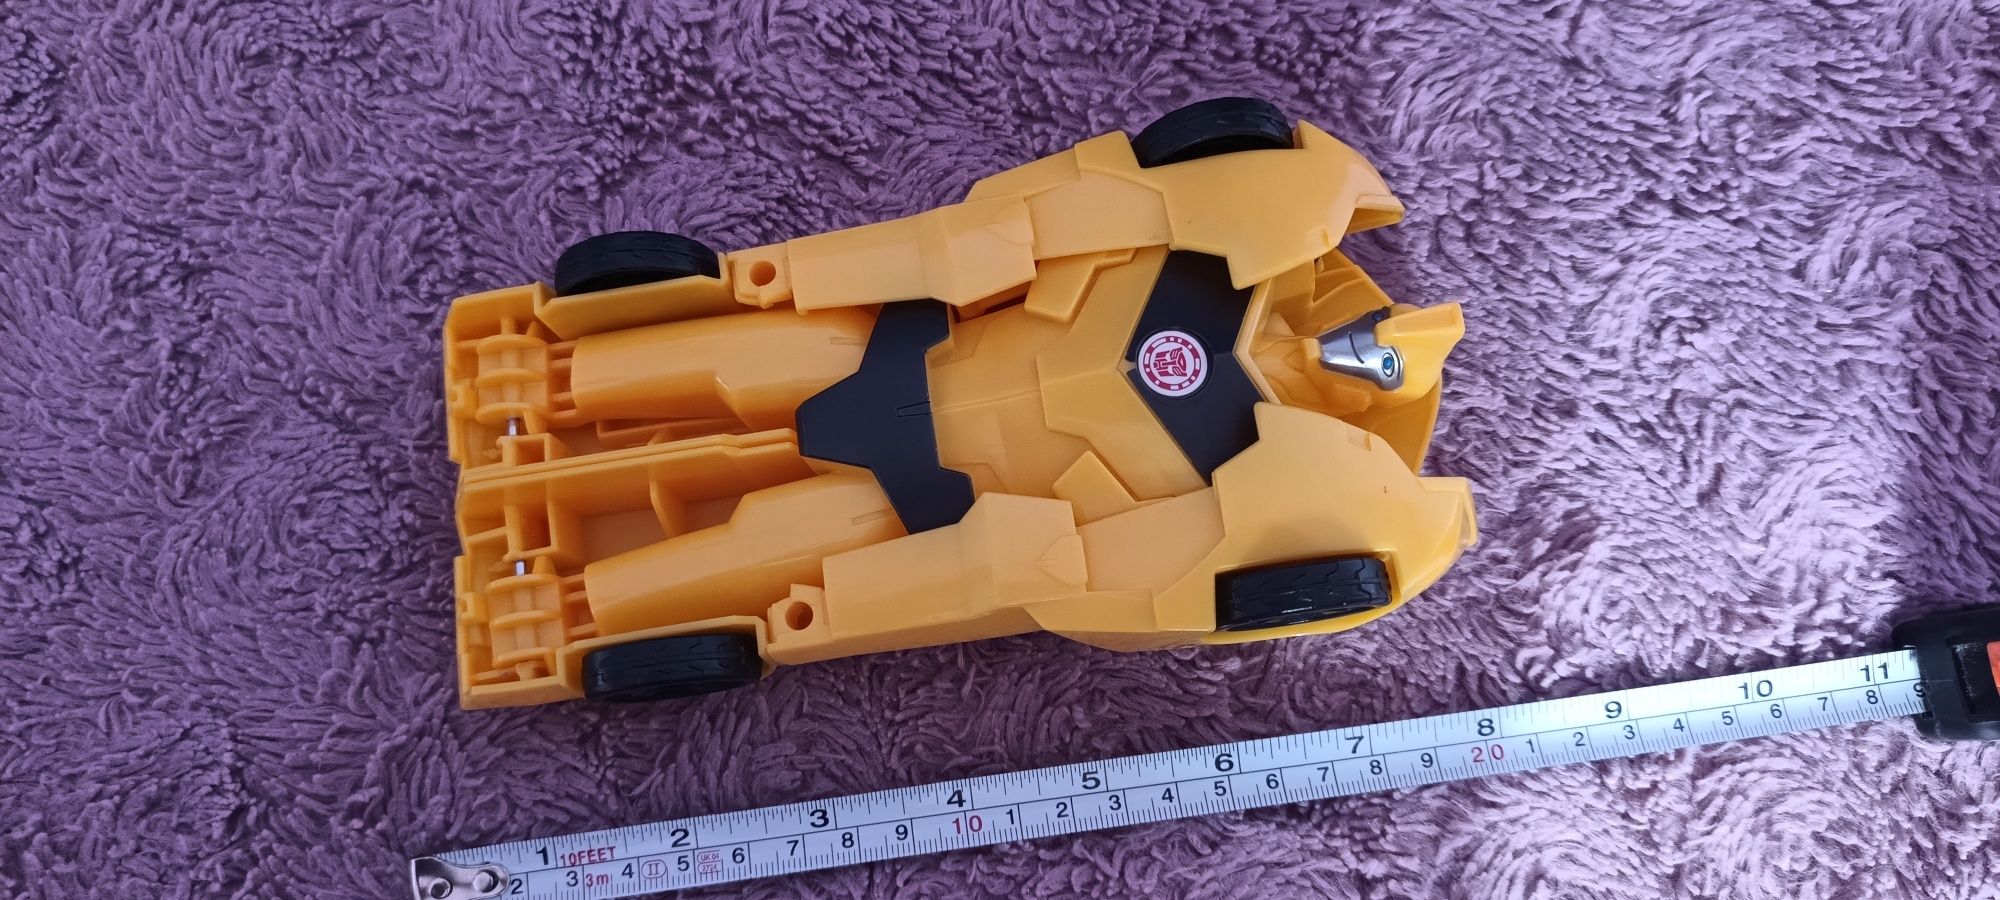 Duży Transformers Bumblebee rozkładany samochód jak nowy